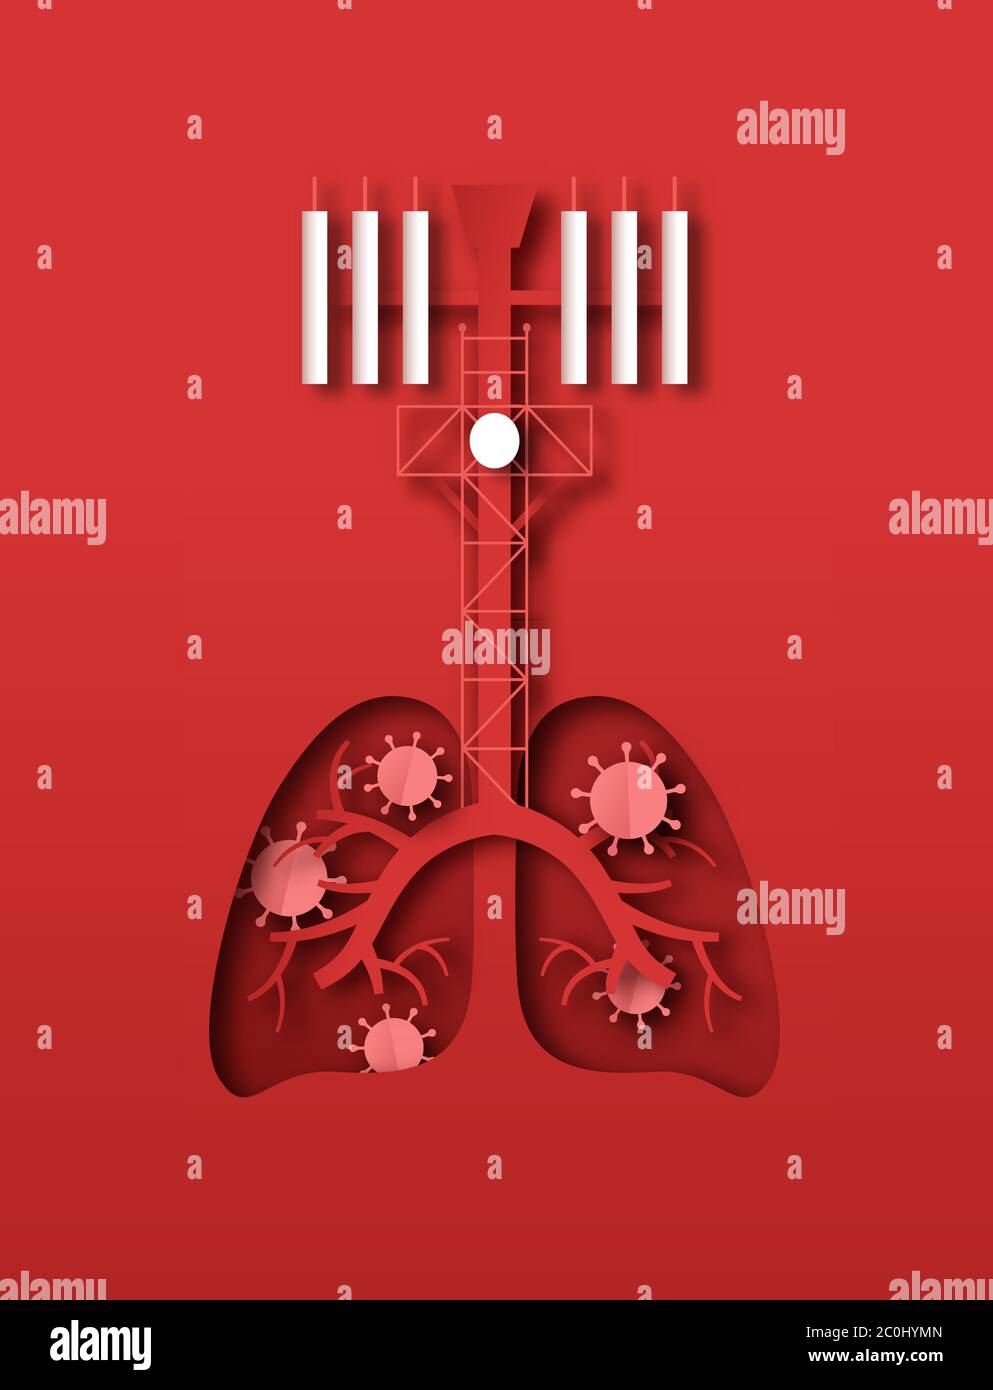 Maladie du coronavirus illustration de la tour de 5 g en forme de poumon infectée par le nouveau covid-19. Conception médicale de papier pour les technologies mobiles dangereuses Illustration de Vecteur